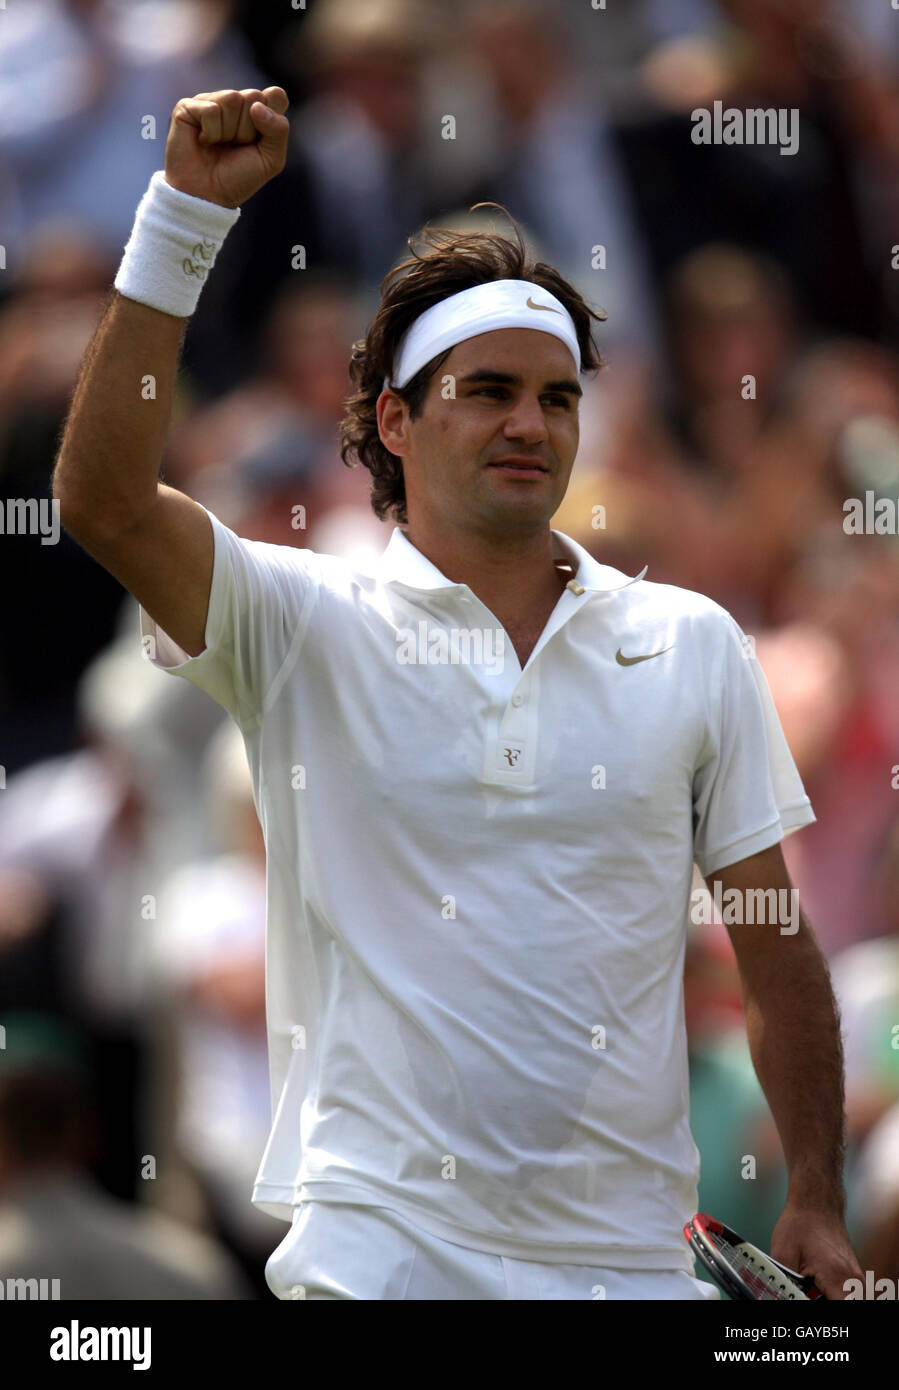 Federer immagini e fotografie stock ad alta risoluzione - Alamy